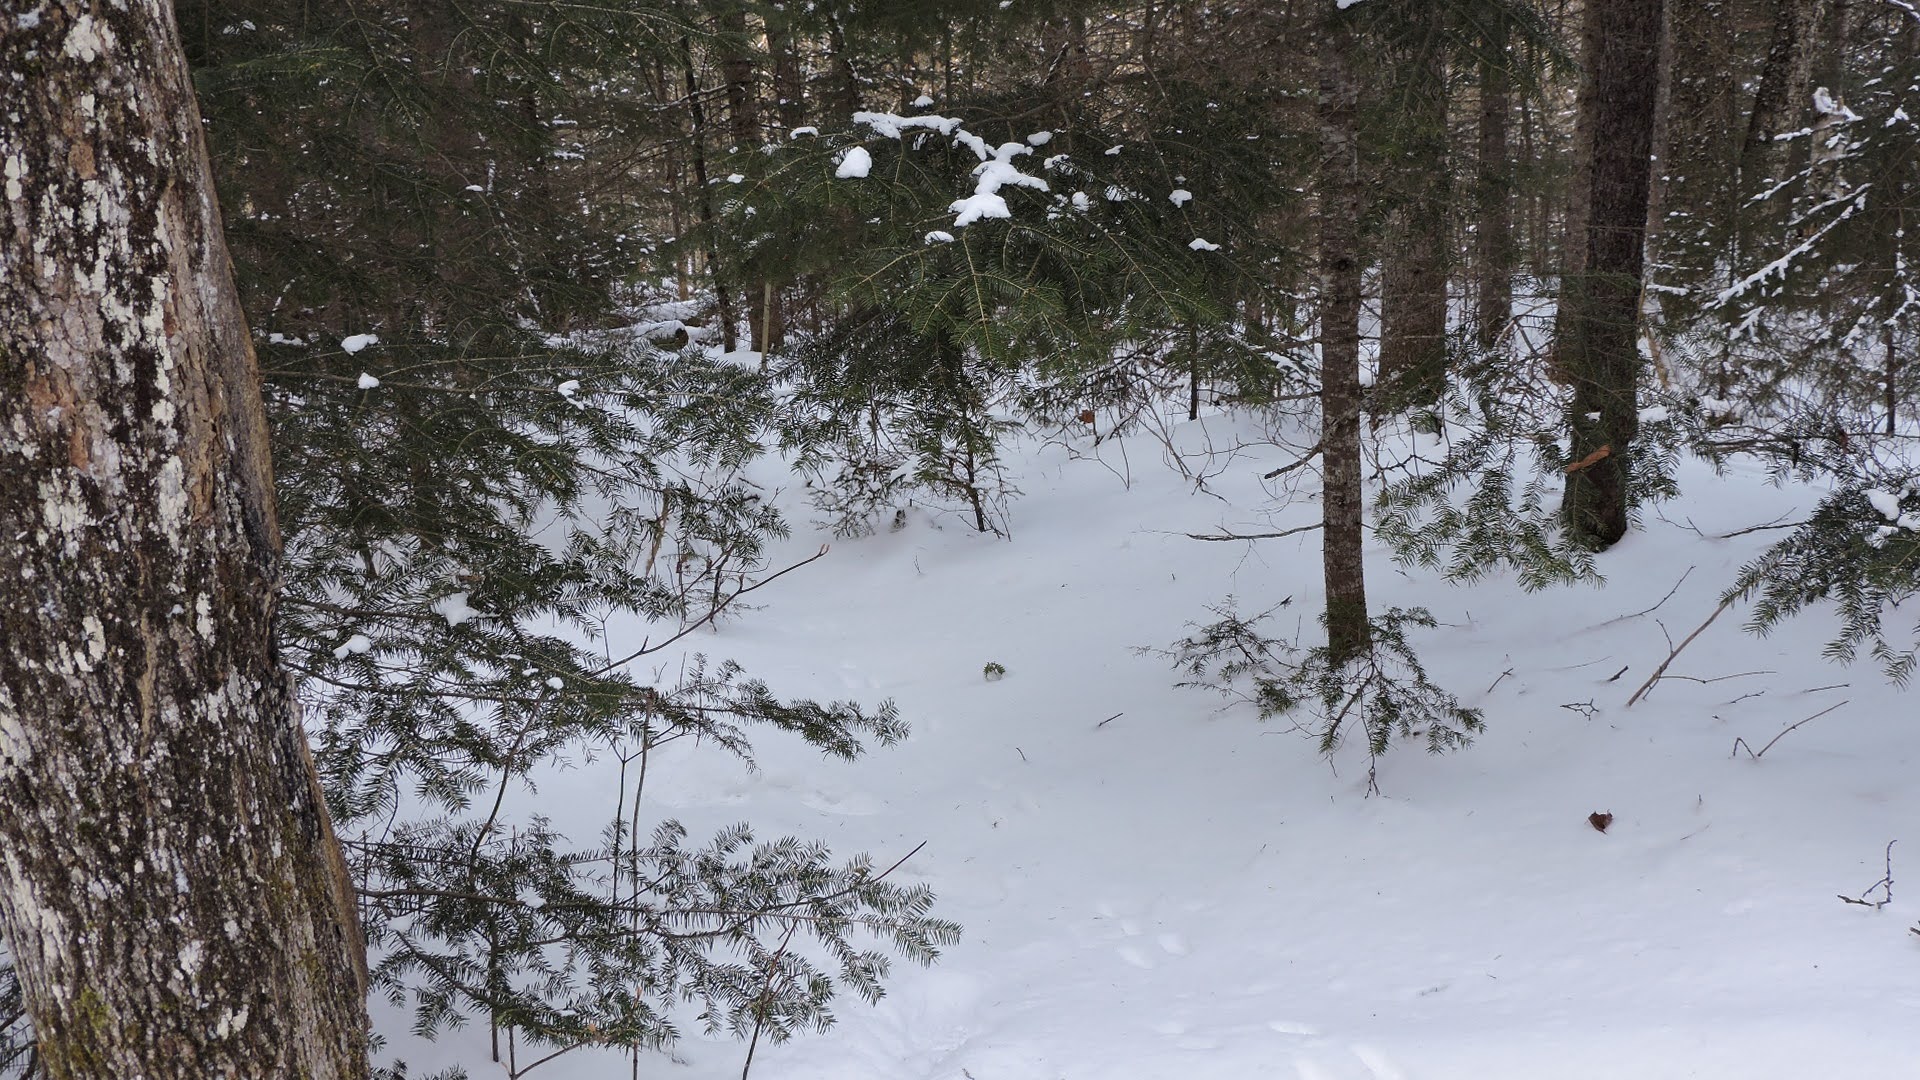 Le lapin ou lièvre d'empreintes de pas dans la neige, les pistes de lapin  sont l'un des plus couramment observés après la neige. Les Lapins aussi ont  des petits orteils ronde et